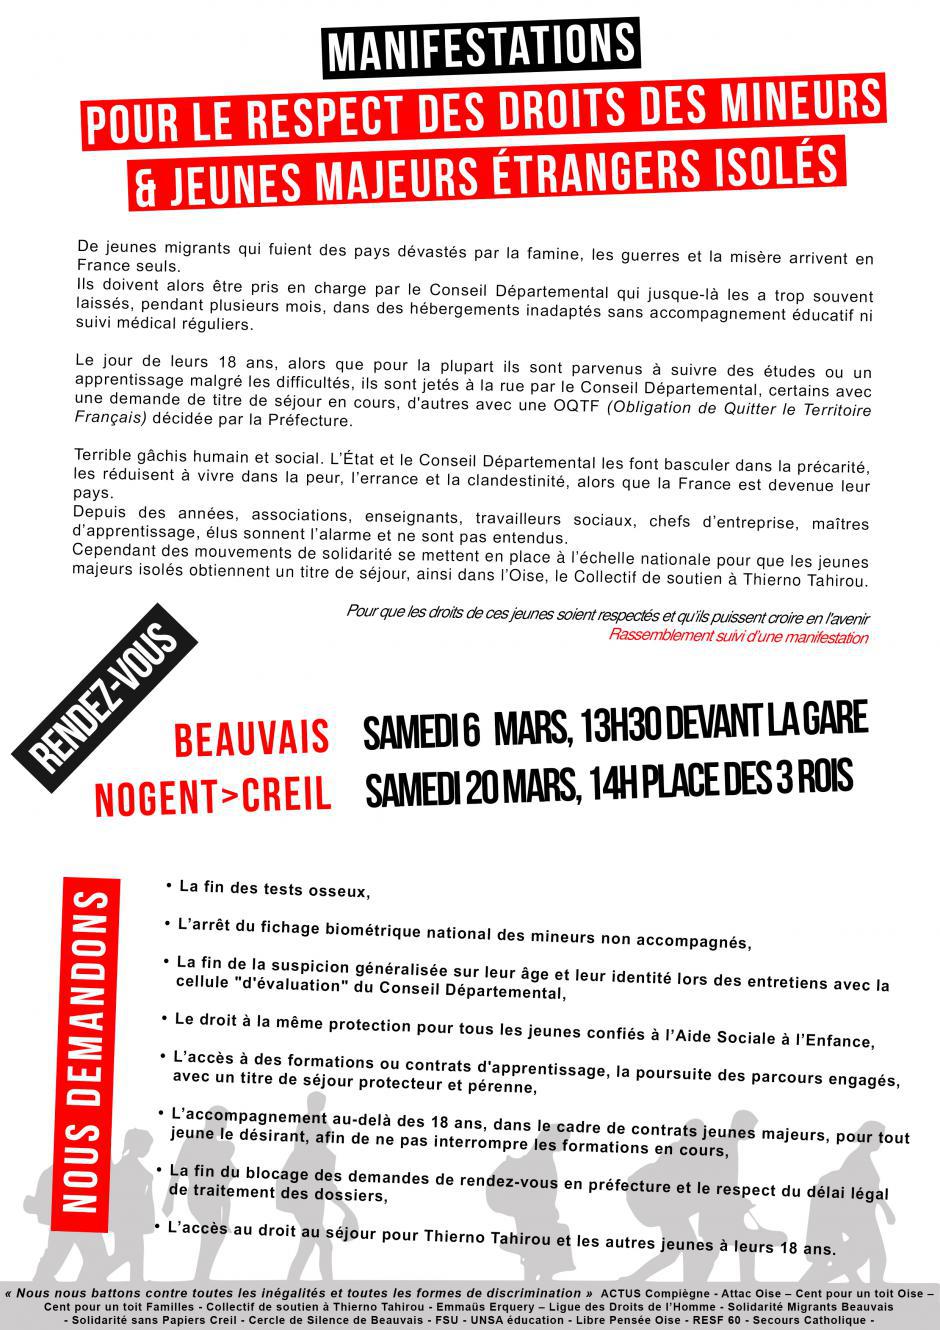 REPORTÉE - 20 mars, Nogent-sur-Oise - Manifestation « Pour le respect des droits des mineurs et des jeunes majeurs étrangers isolés »